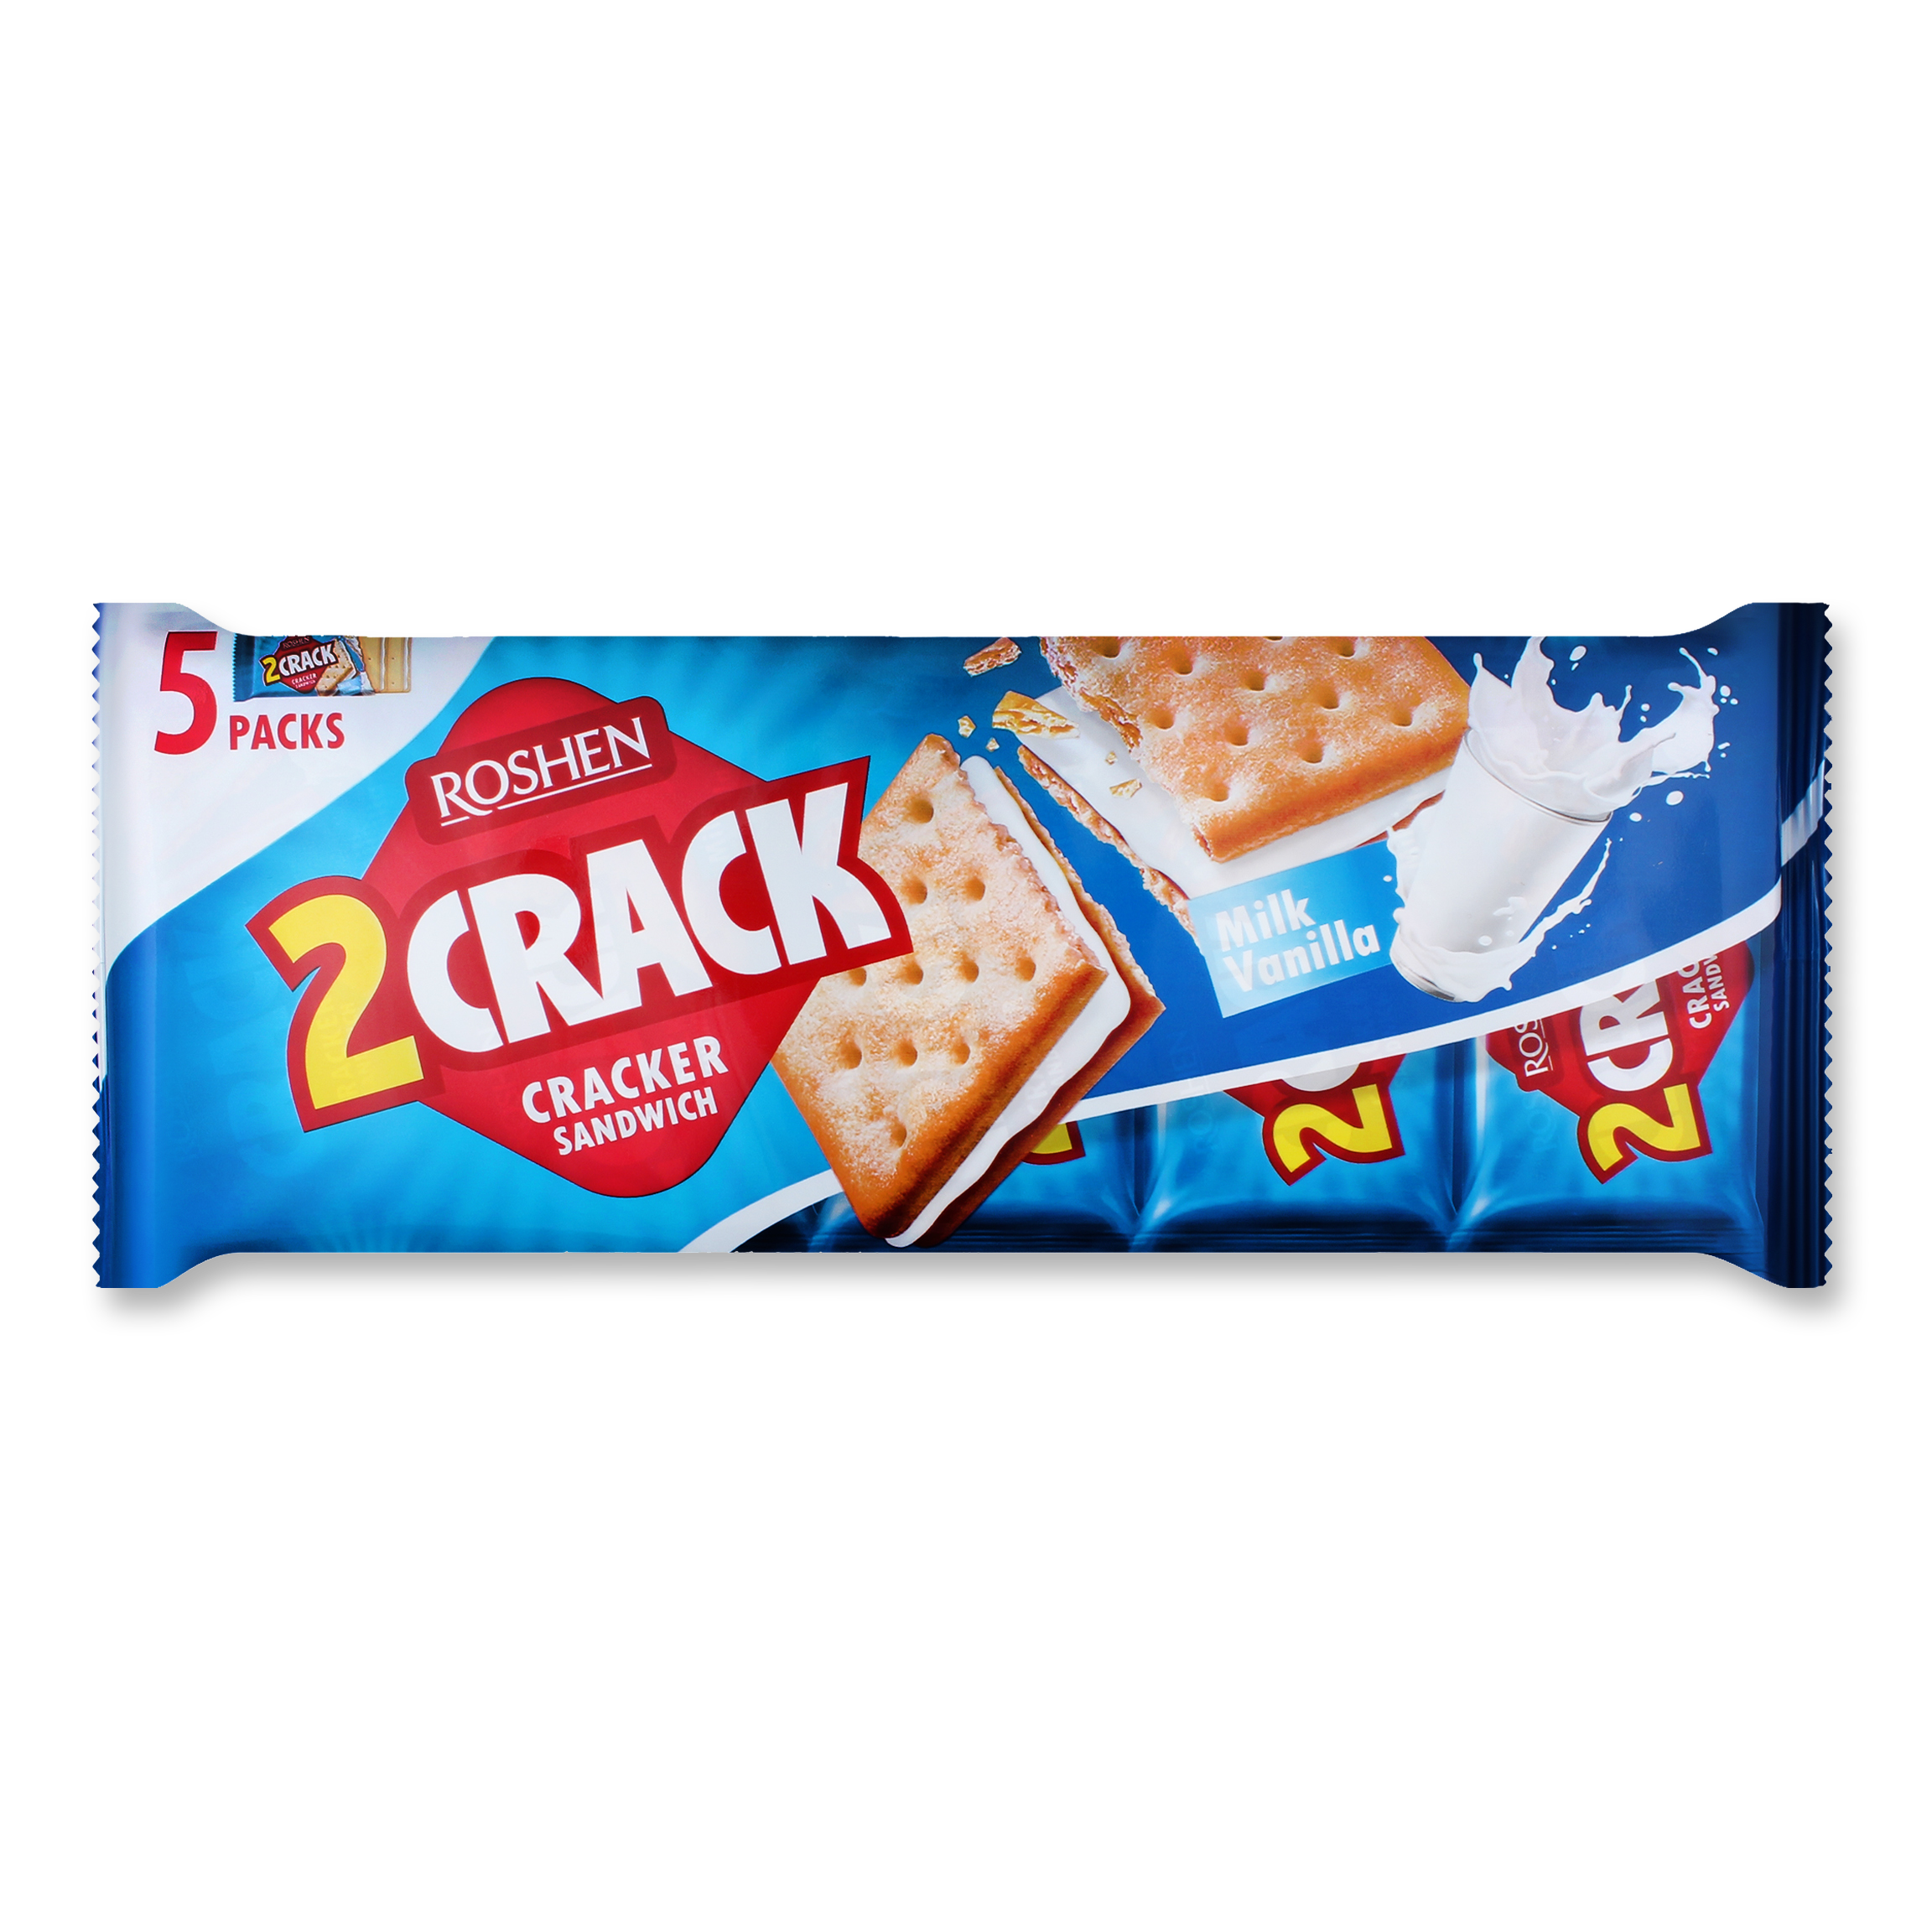 Крекер Roshen 2 CRACK с молочно-ванильной начинкой 235г